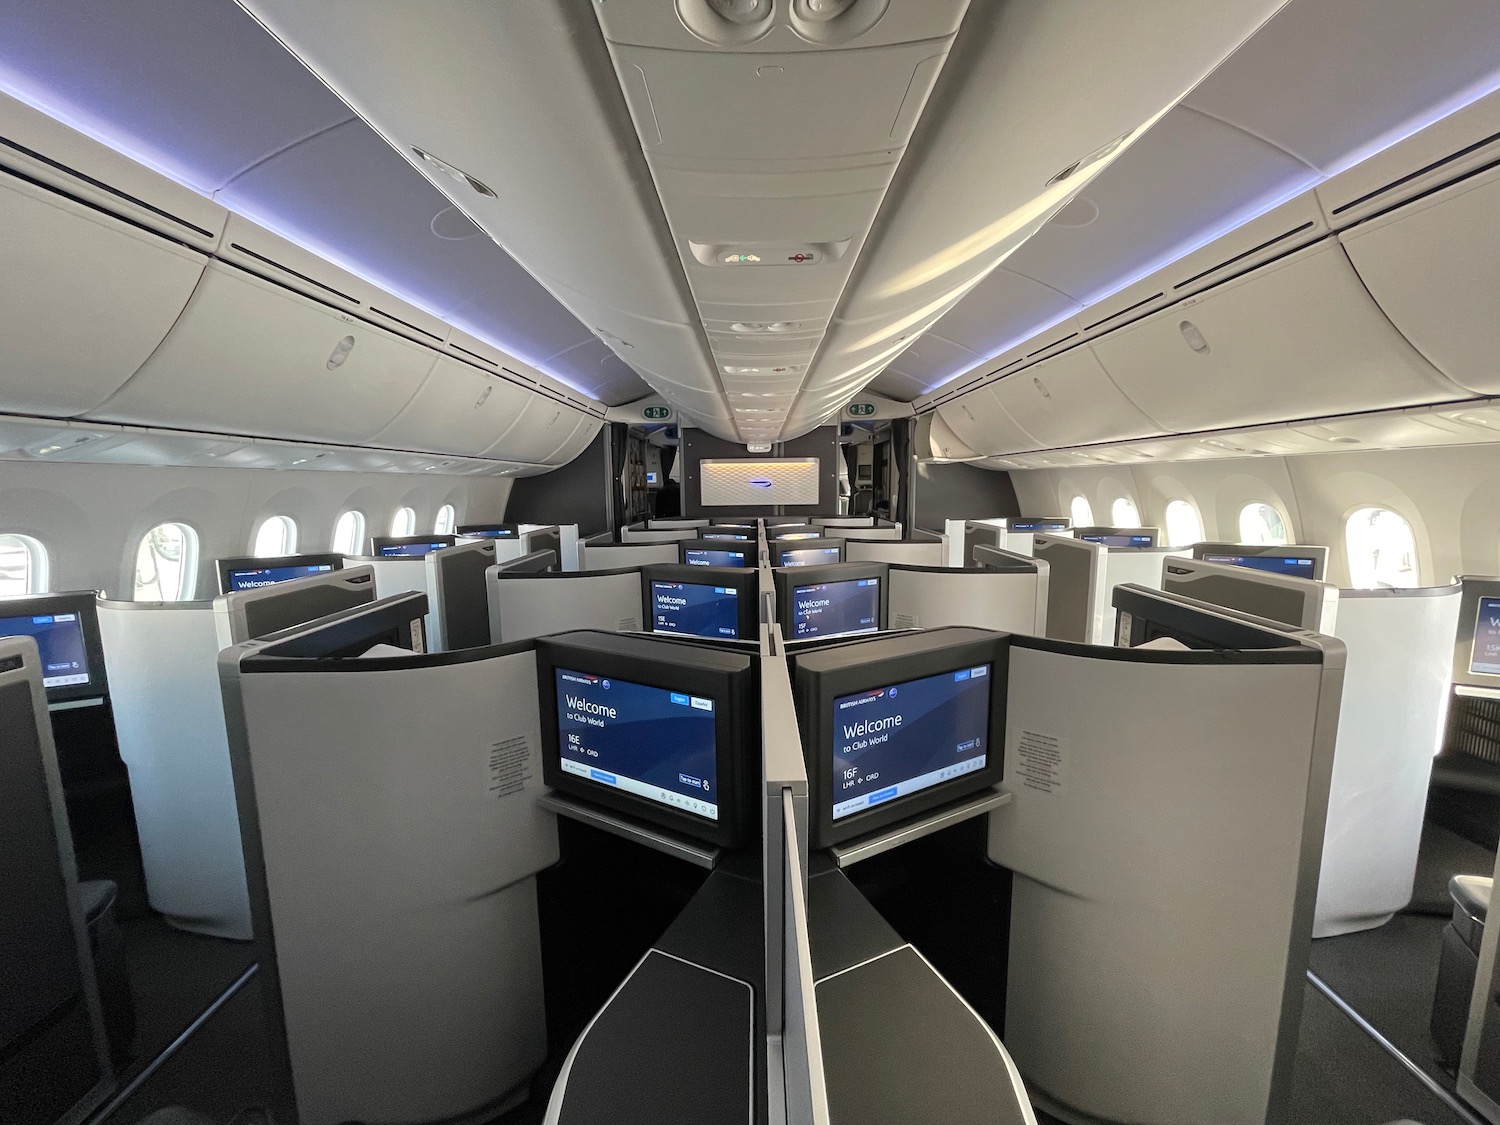 British Airways 787 10 Club World Suites 5 - Travel News, Insights & Resources.